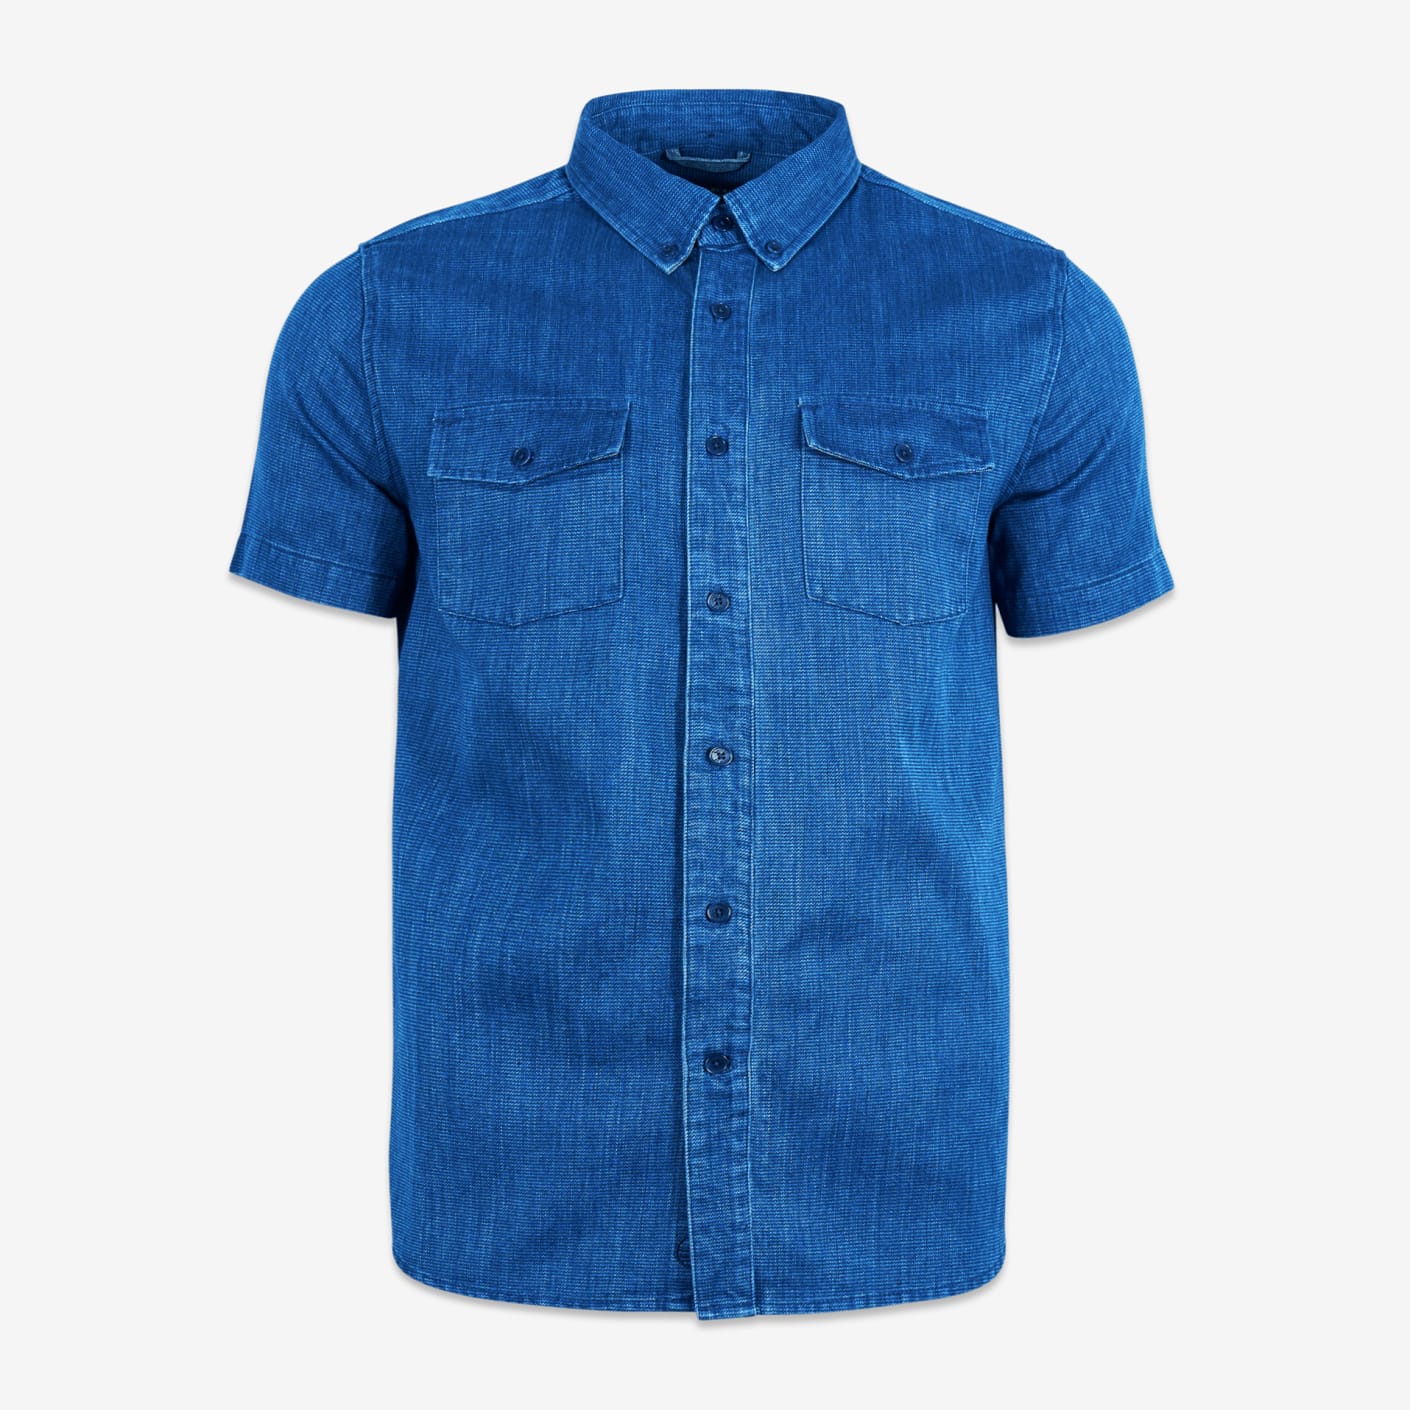 United By Blue Indigo Dyed Short Sleeve Shirt, Indigo | Bespoke Post